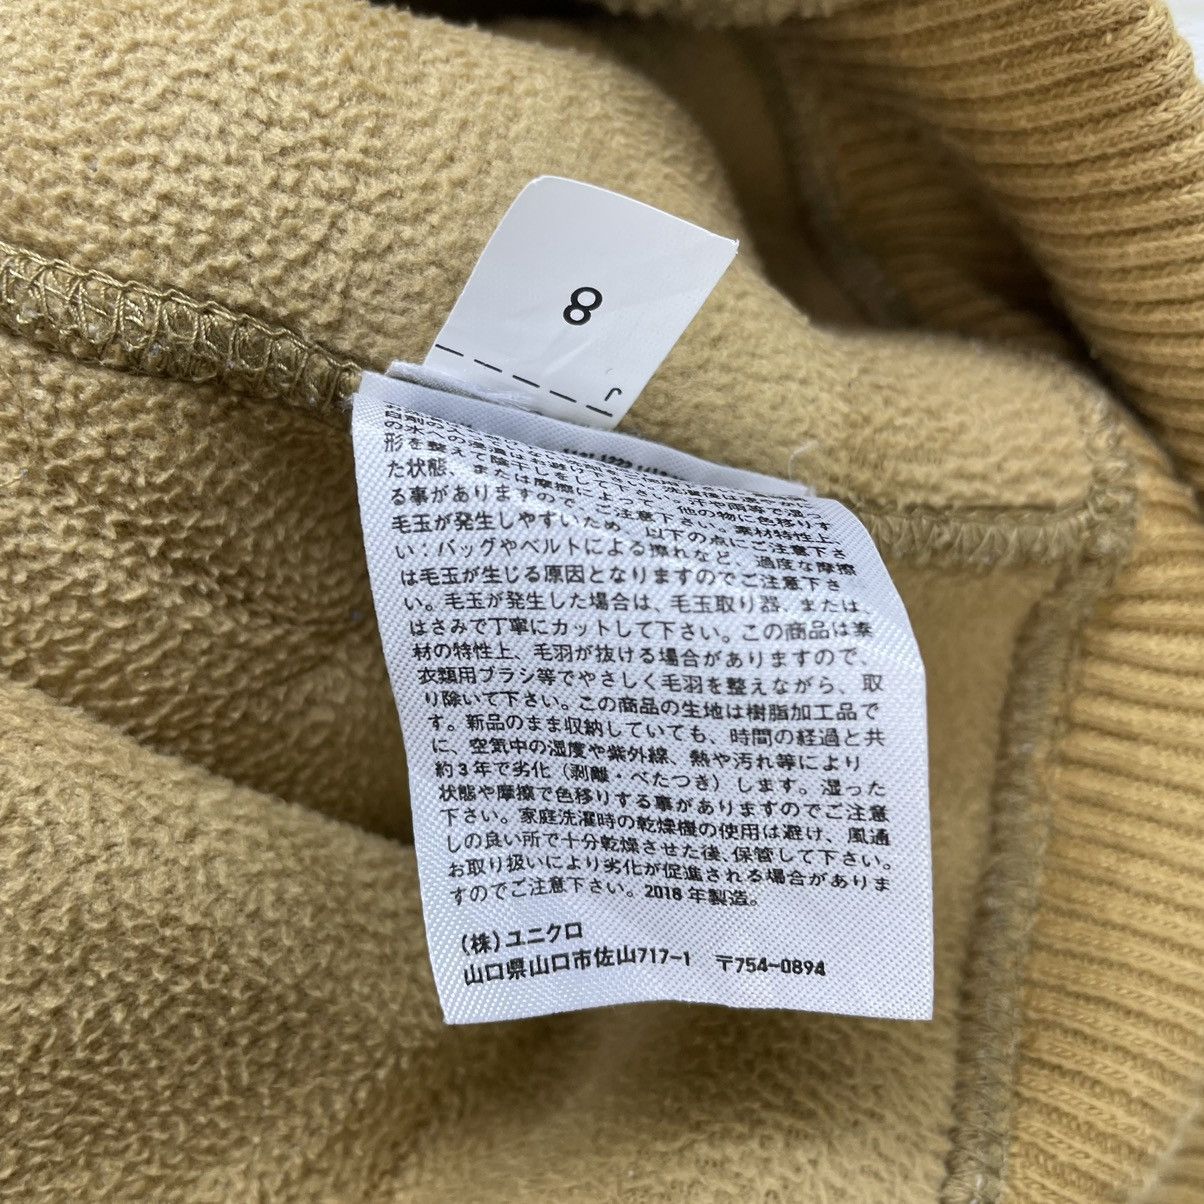 Japanese Brand Uniqlo X Lemaire Sherpa Jacket - 7